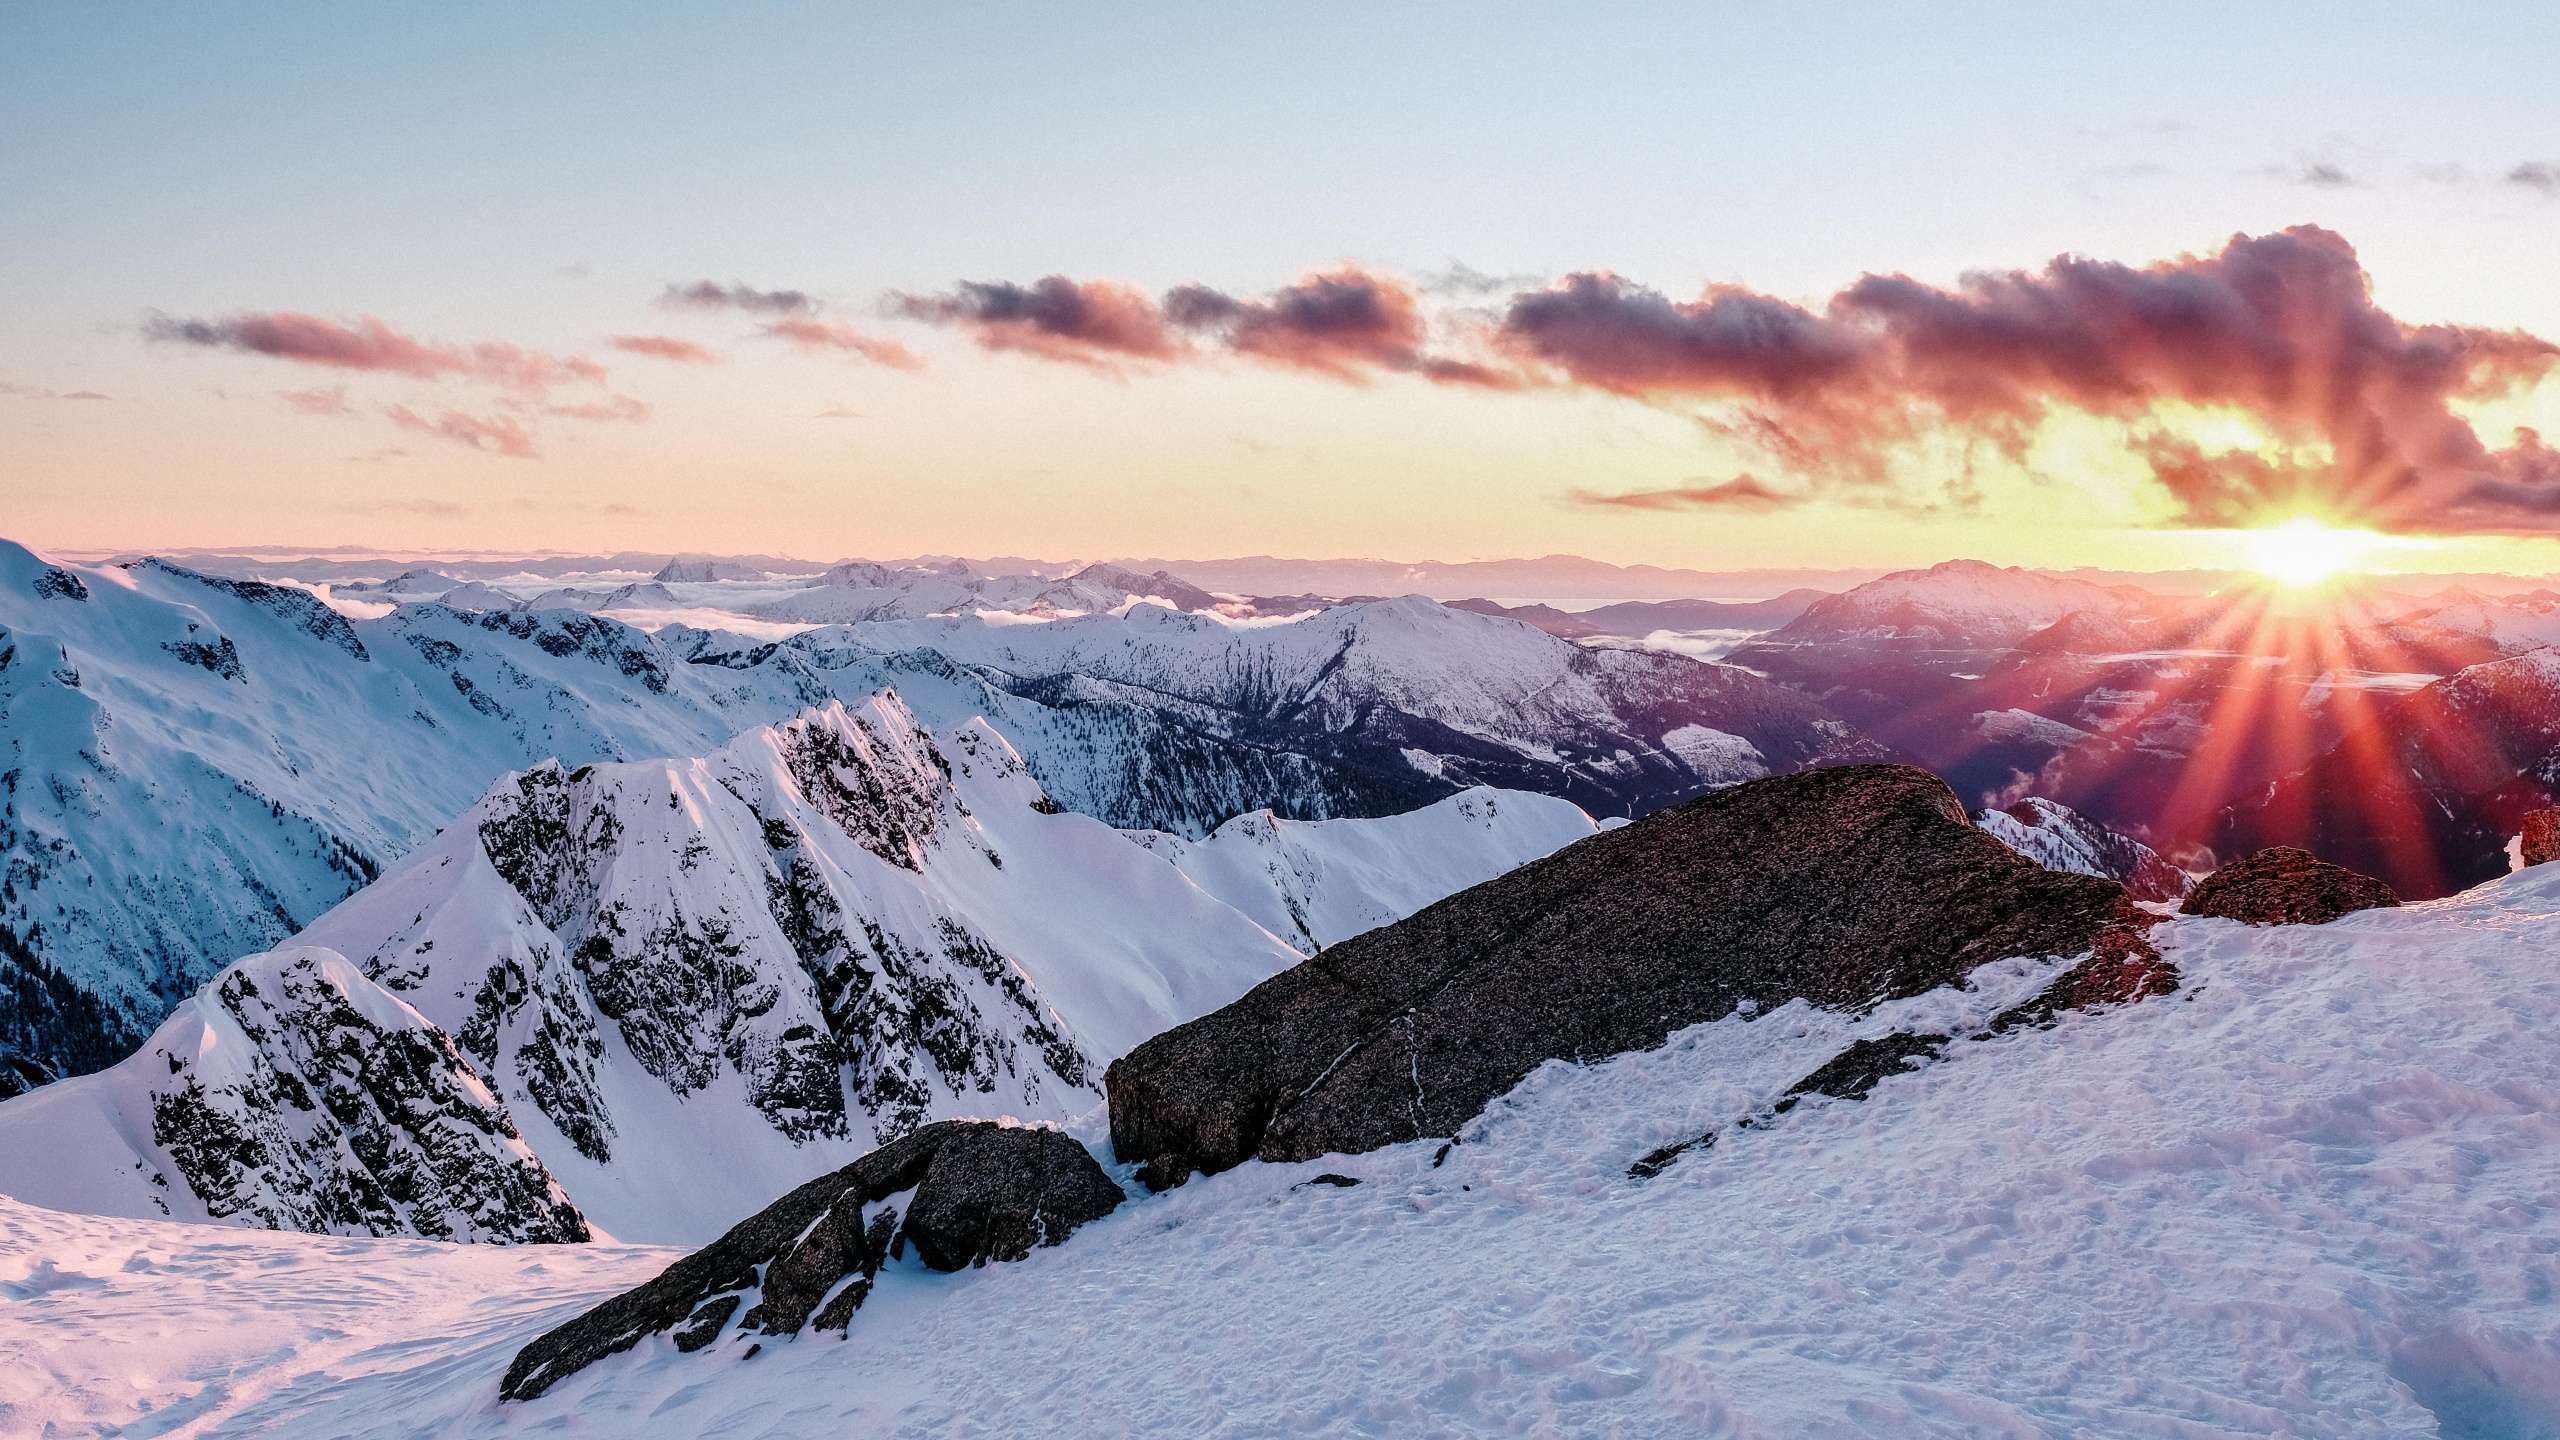 Las Formaciones Montañosas, Montaña, Nieve, Invierno, Naturaleza. Wallpaper in 2560x1440 Resolution